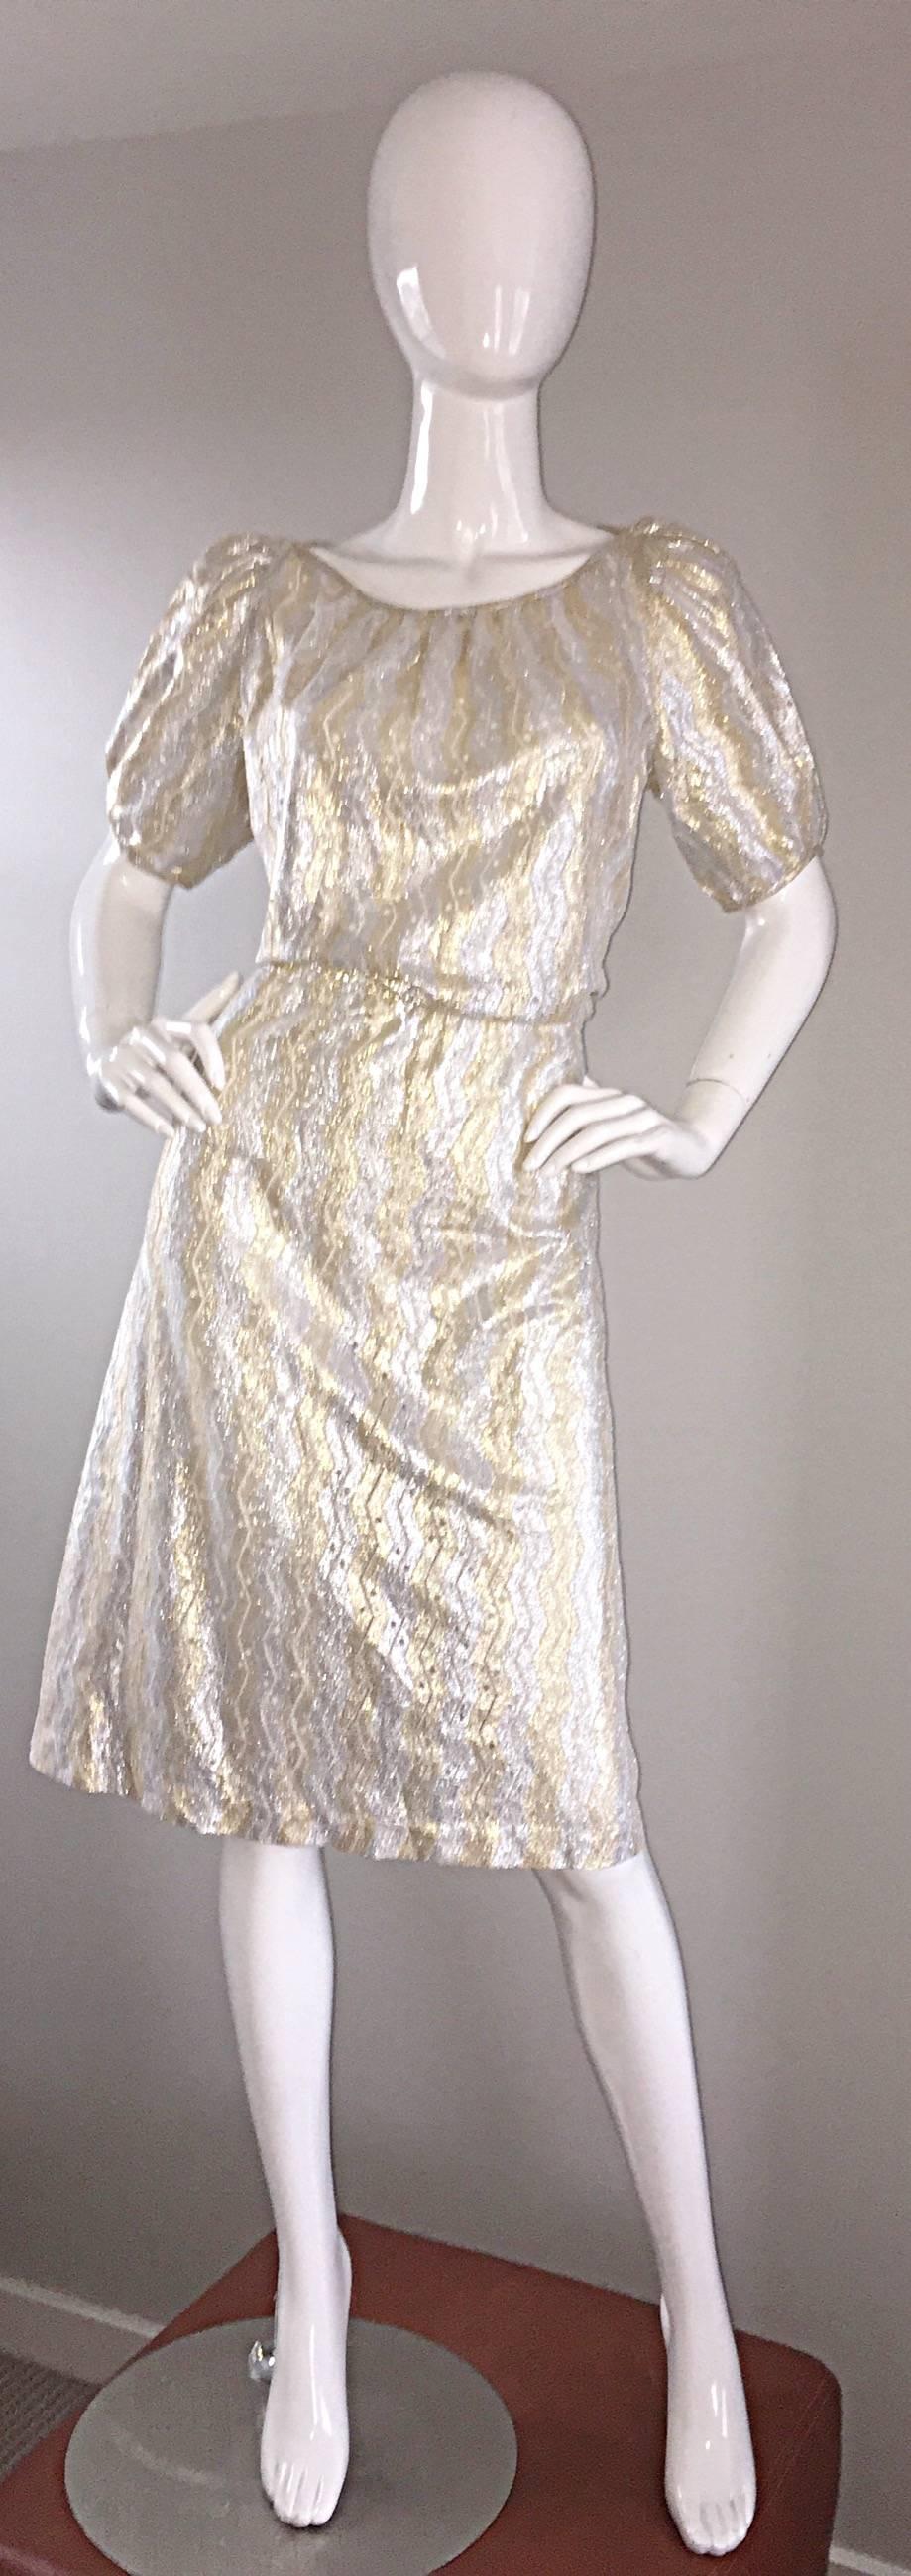 Superbe robe à manches courtes métallisée argentée et dorée, neuve et étiquetée, de marque SULTANA / ADINI ! Robe de créateur indien super rare et difficile à trouver. Rayures en zig-zag et détails en crochet semi-transparents. Manches légèrement